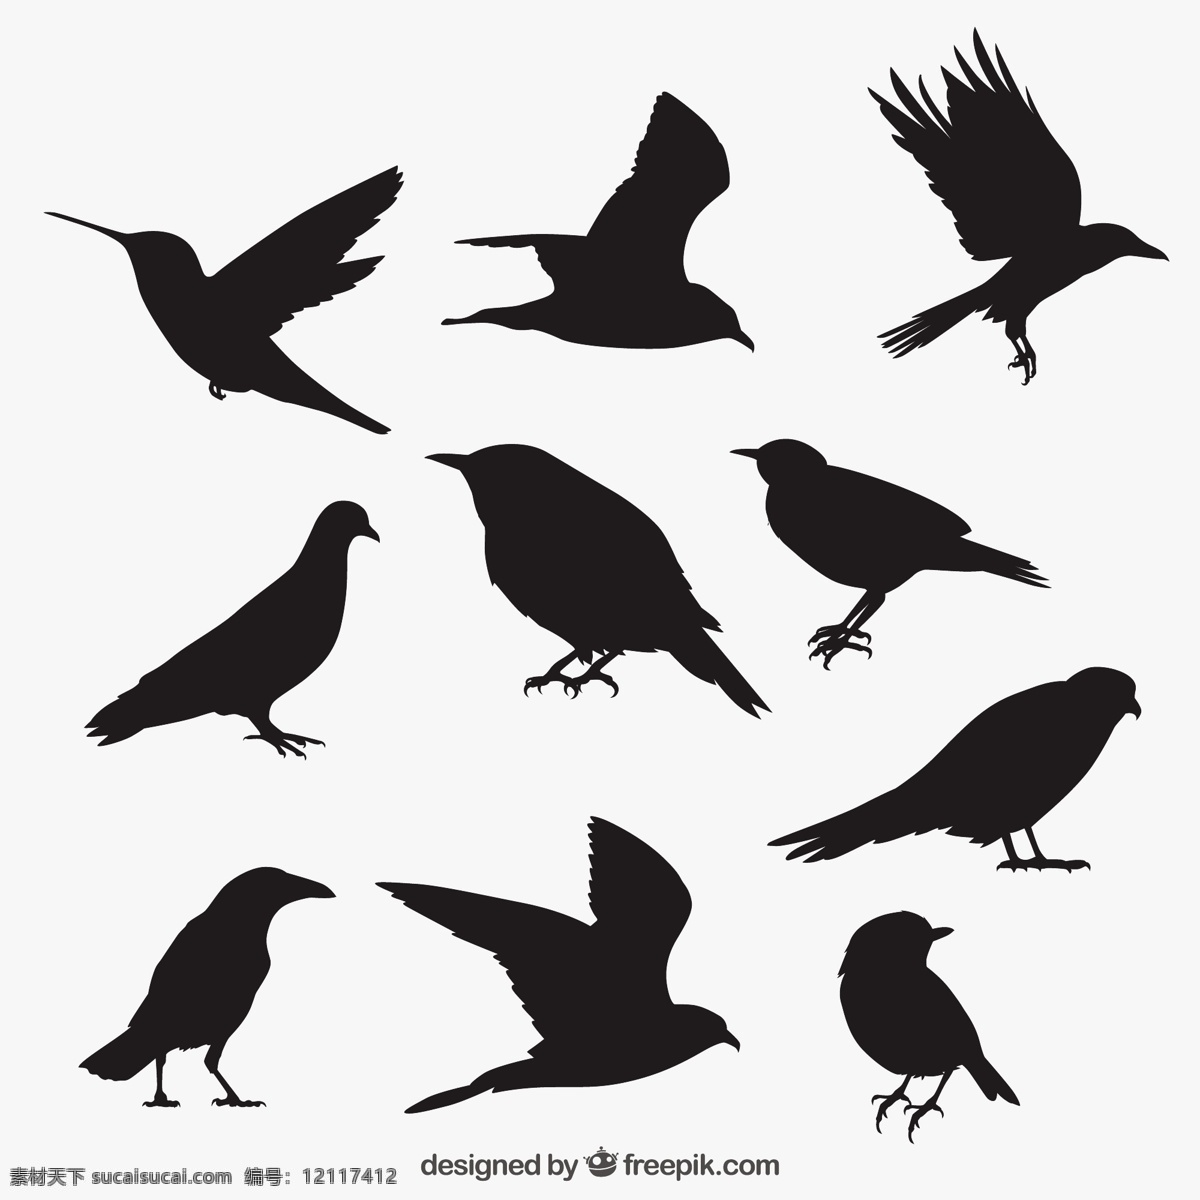 手绘黑色的鸟 自然 动物 翅膀 羽毛 丛林 黑色 动物园 鸽子 乌鸦 剪影 野生 野生动物 采集 麻雀 大纲